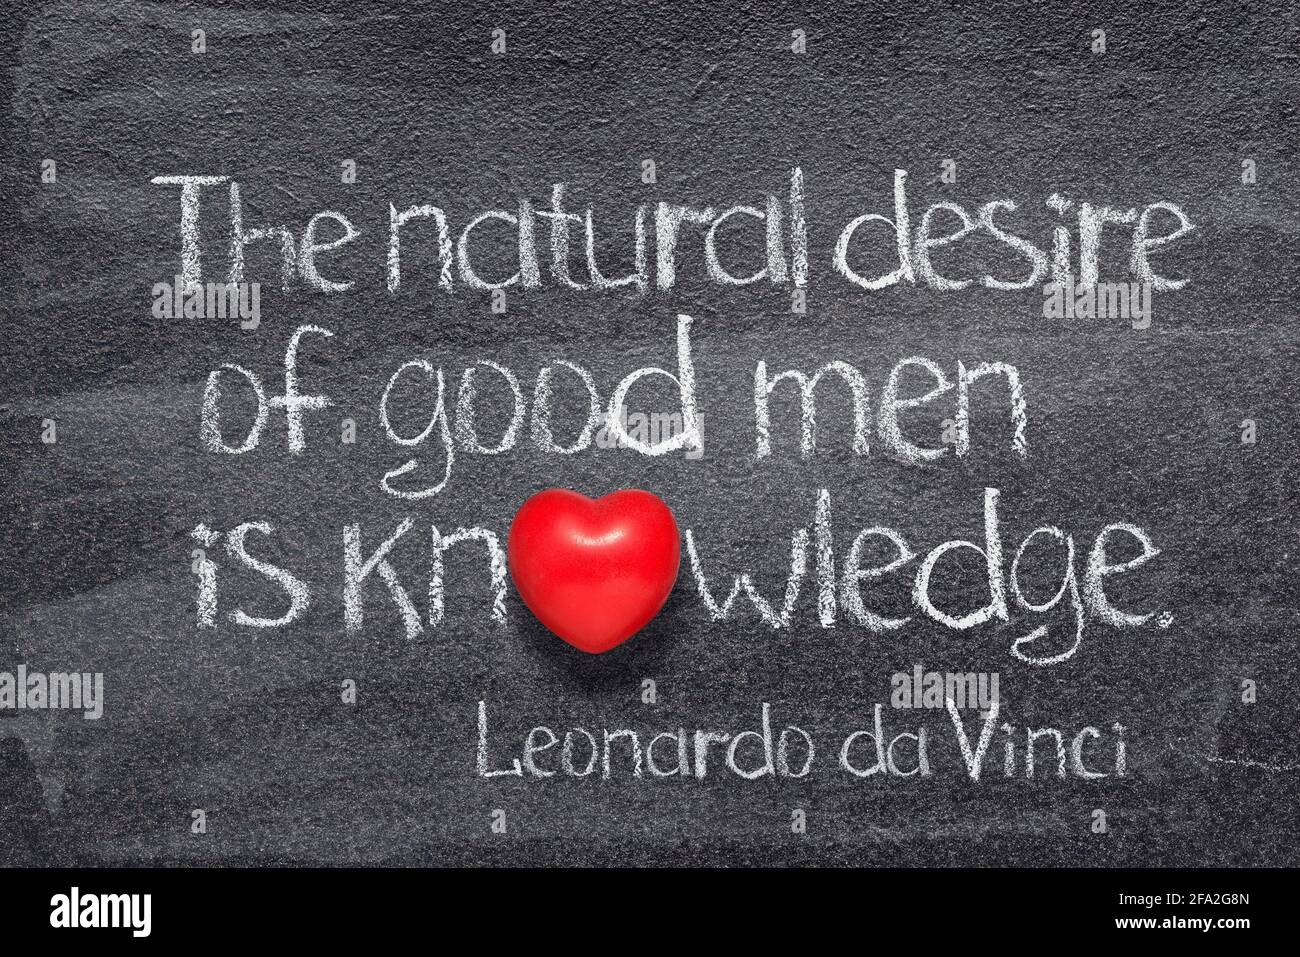 Der natürliche Wunsch guter Menschen ist Wissen - uralt Italienischer Künstler Leonardo da Vinci Zitat geschrieben auf Tafel mit Rotes Herzsymbol Stockfoto